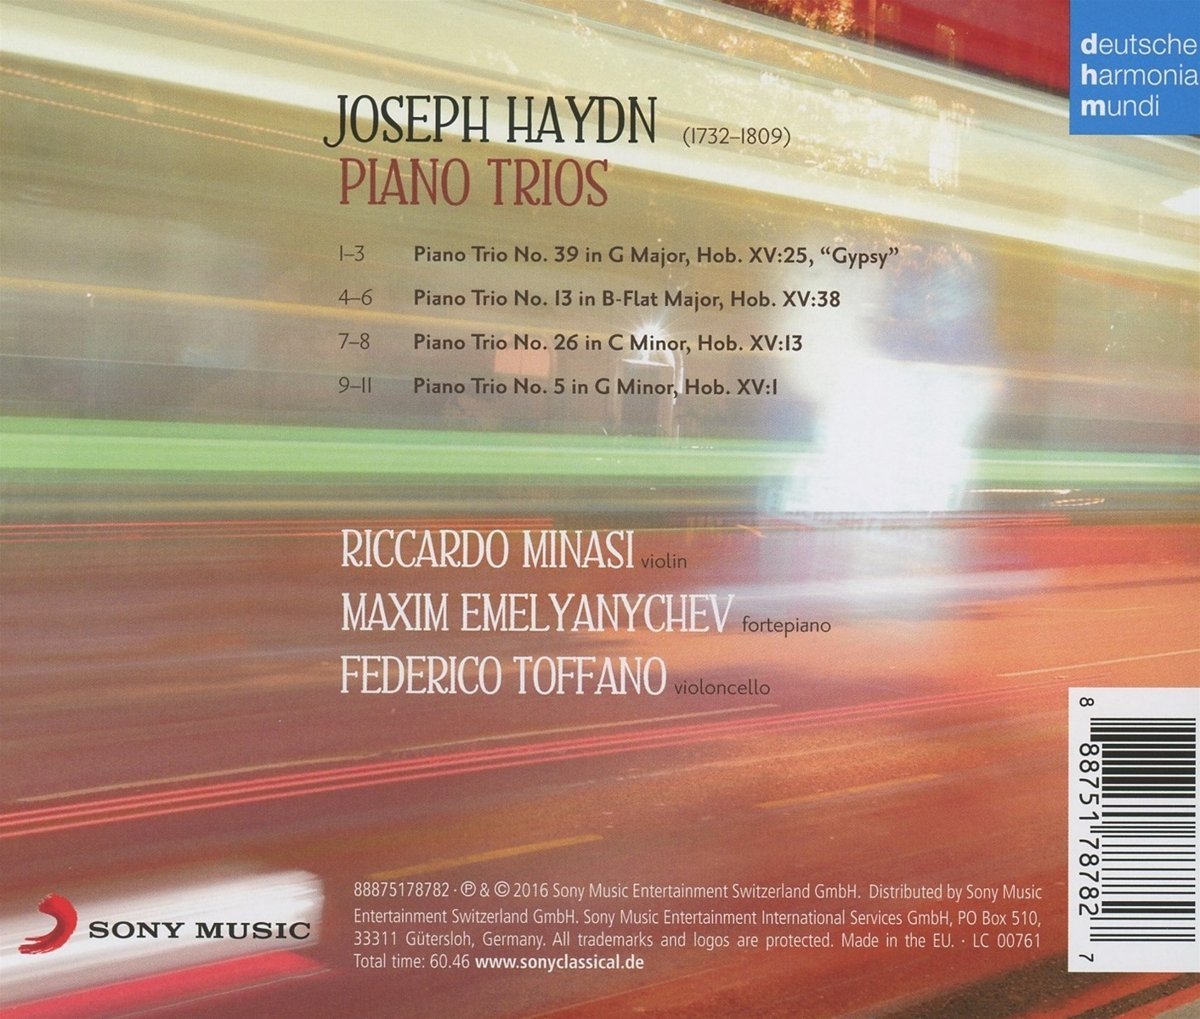 Haydn: Piano Trios | Riccardo Minasi, Maxim Emelyanychev, Frederico Toffano, Franz Joseph Haydn